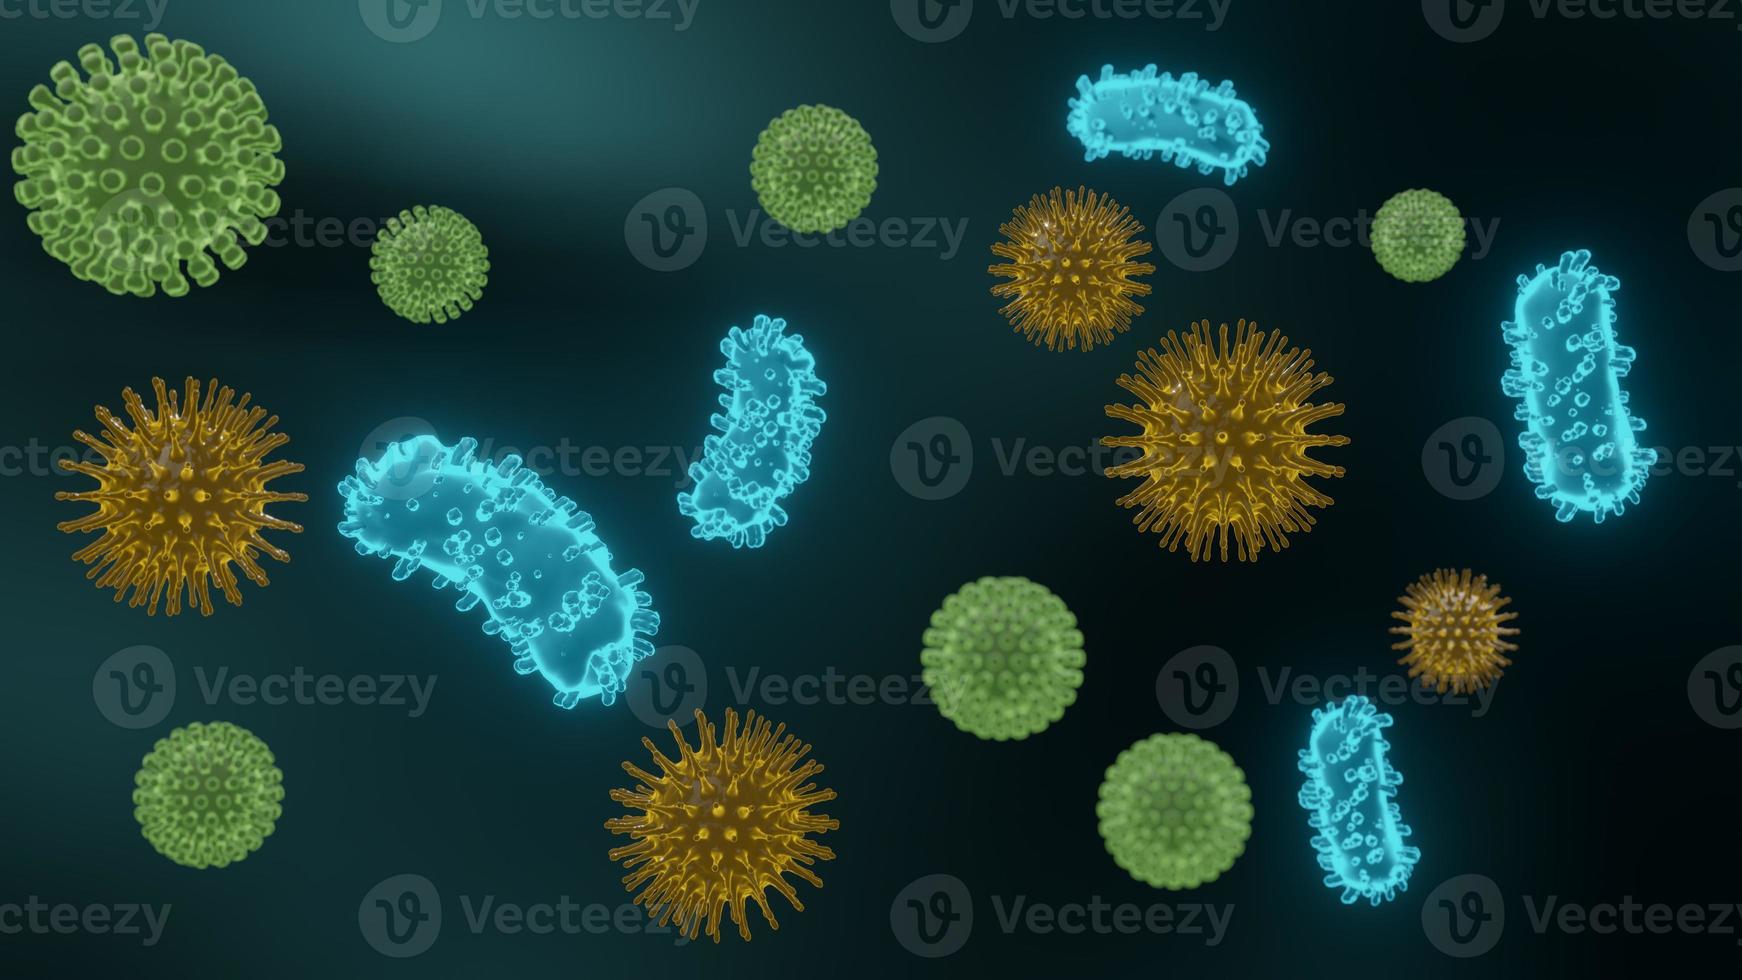 patogena virus som orsakar infektion i värdorganismen, virussjukdomsutbrott, för bakgrunds- eller grafisk hjälp, 3d-rendering foto